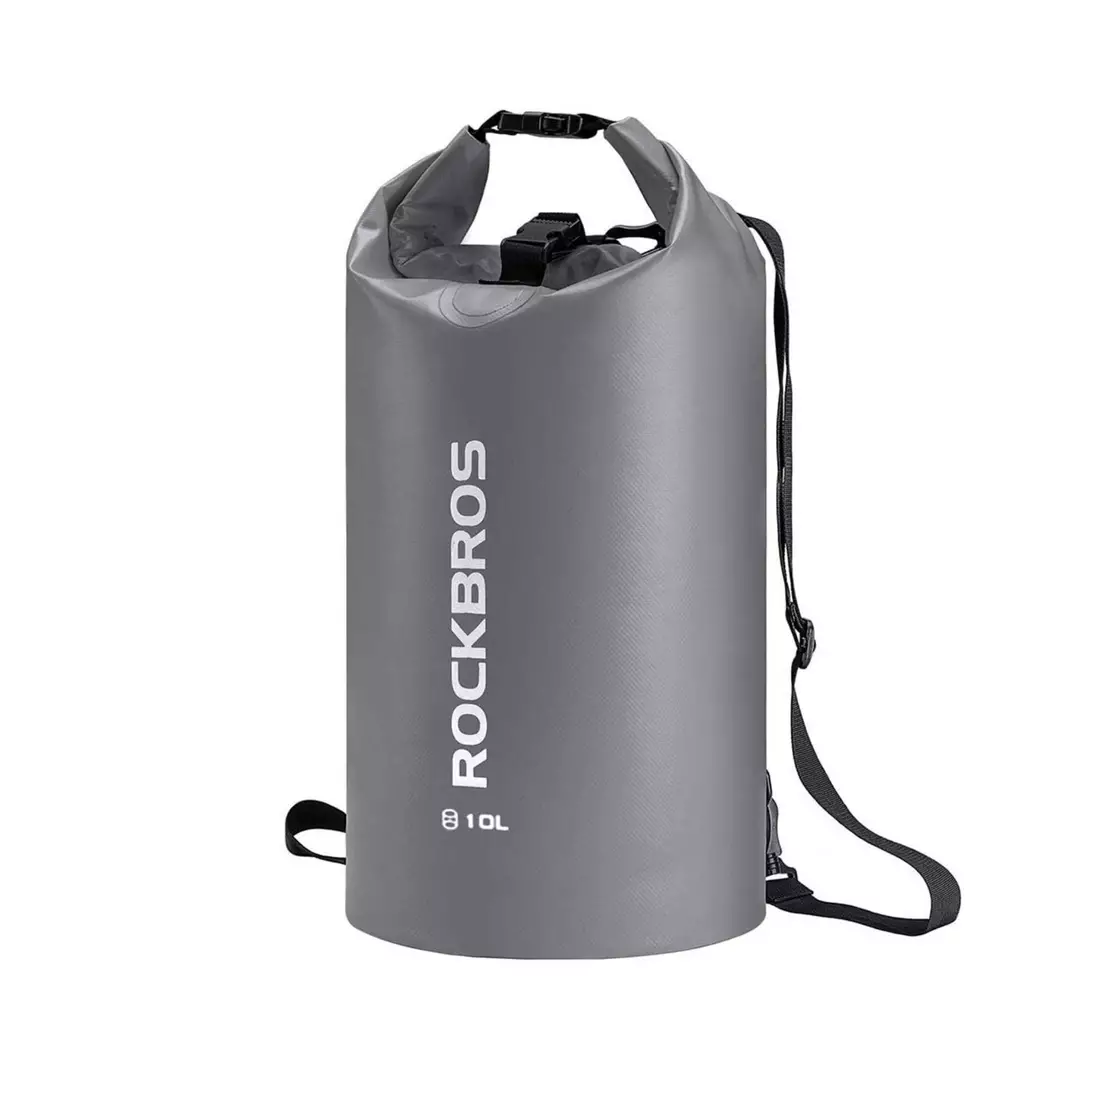 Rockbros Vodeodolný batoh / taška 10L, sivý ST-004GR